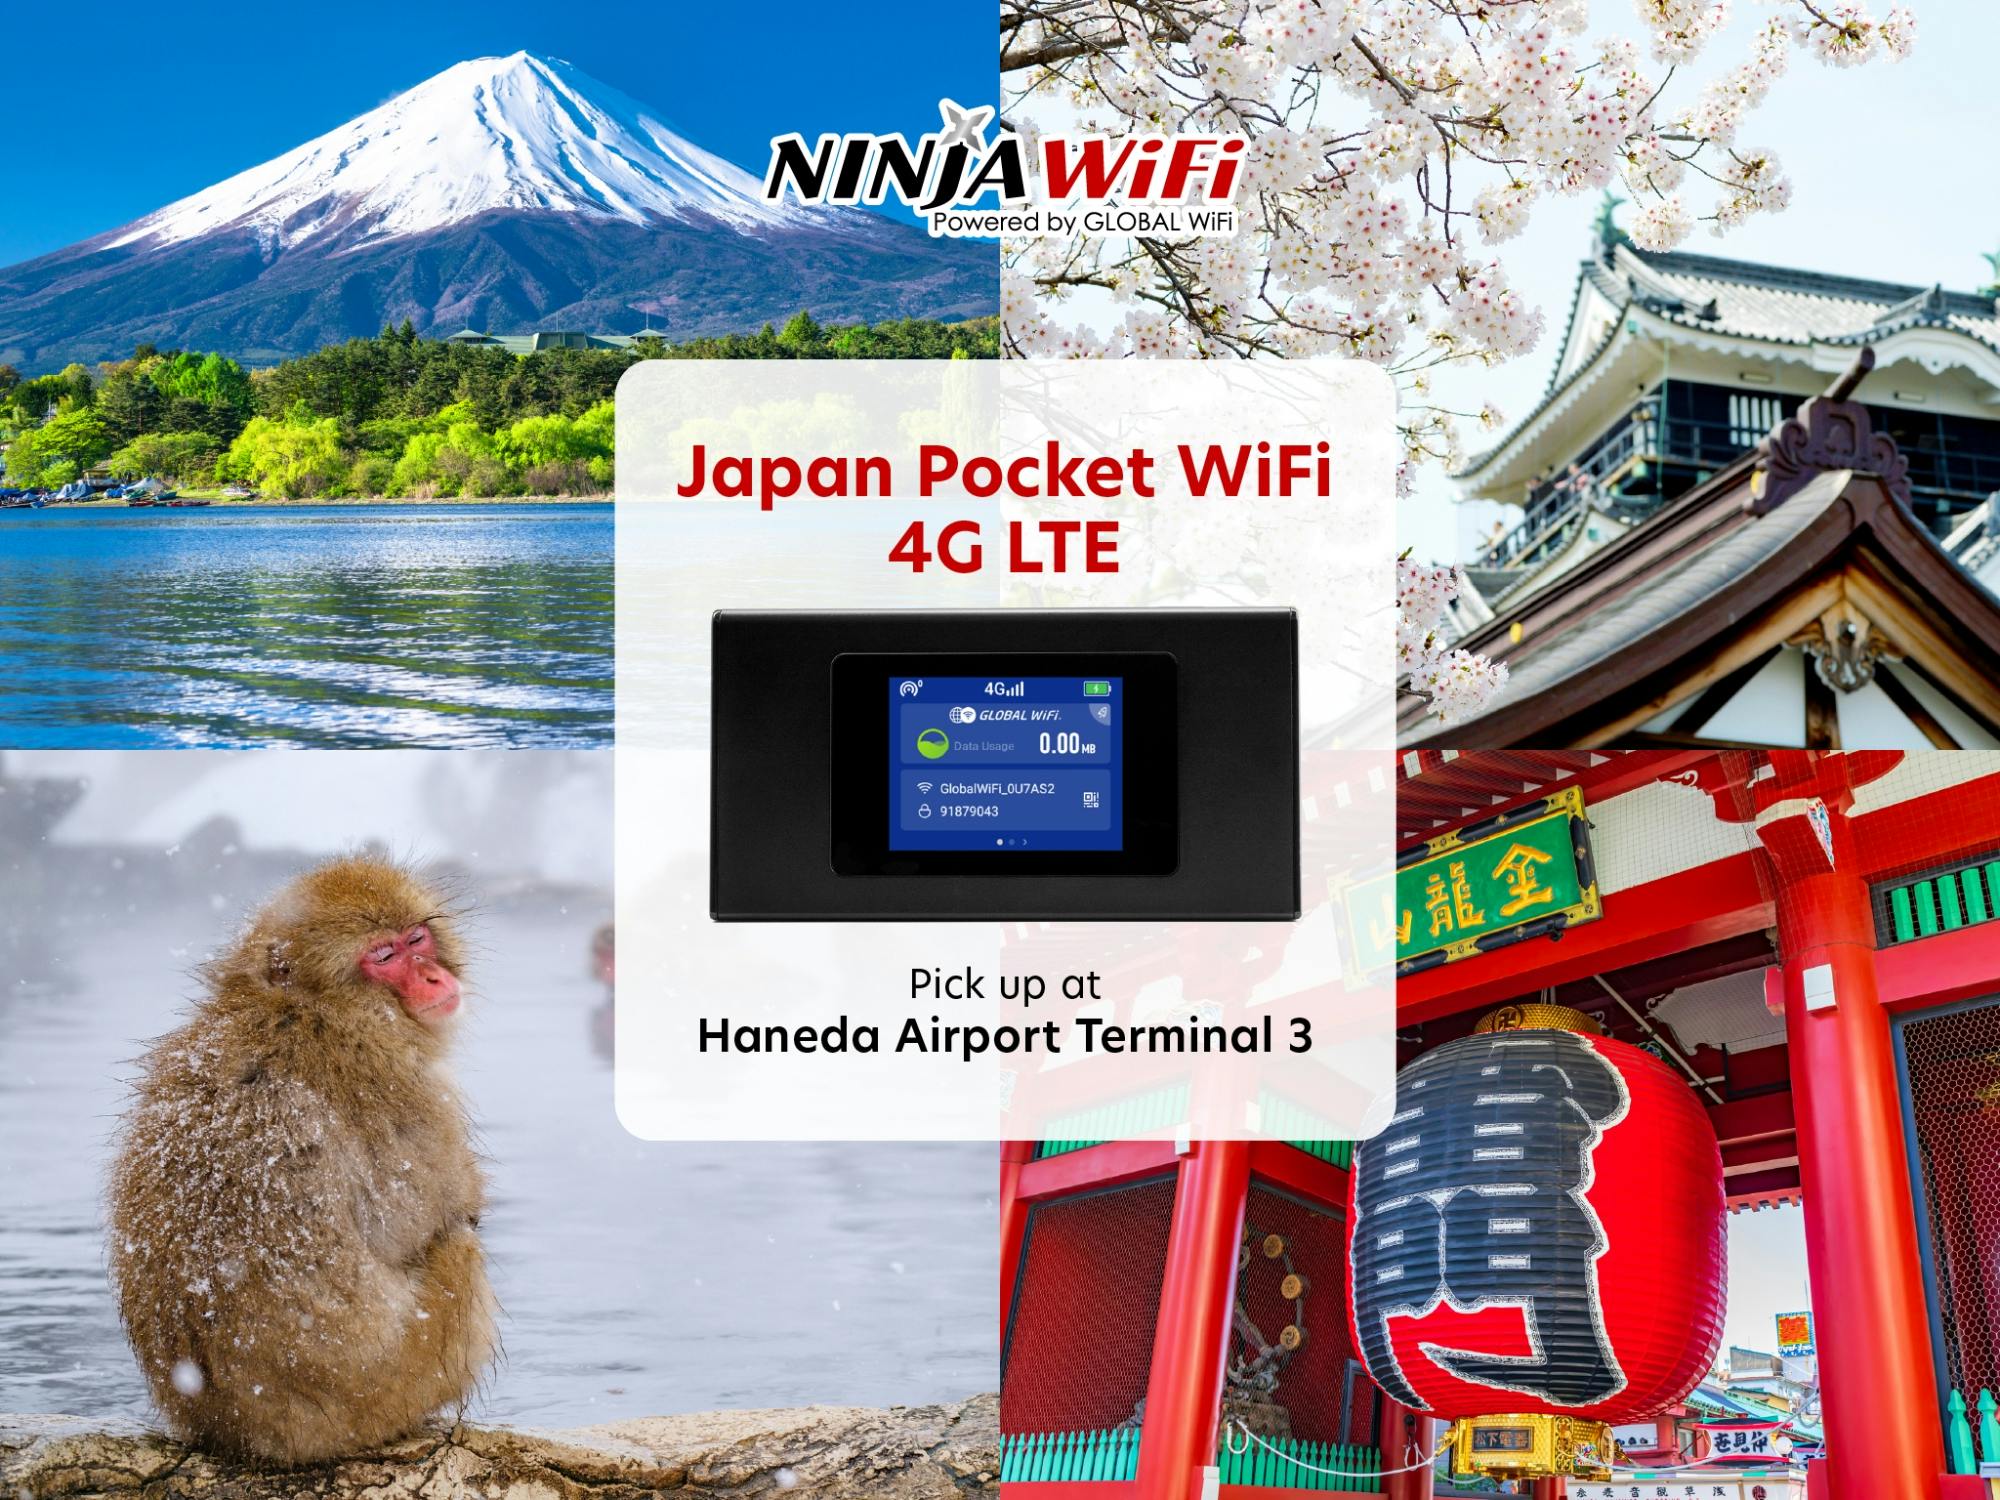 Pocket Wi-Fi rental at Haneda Airport Terminal 3